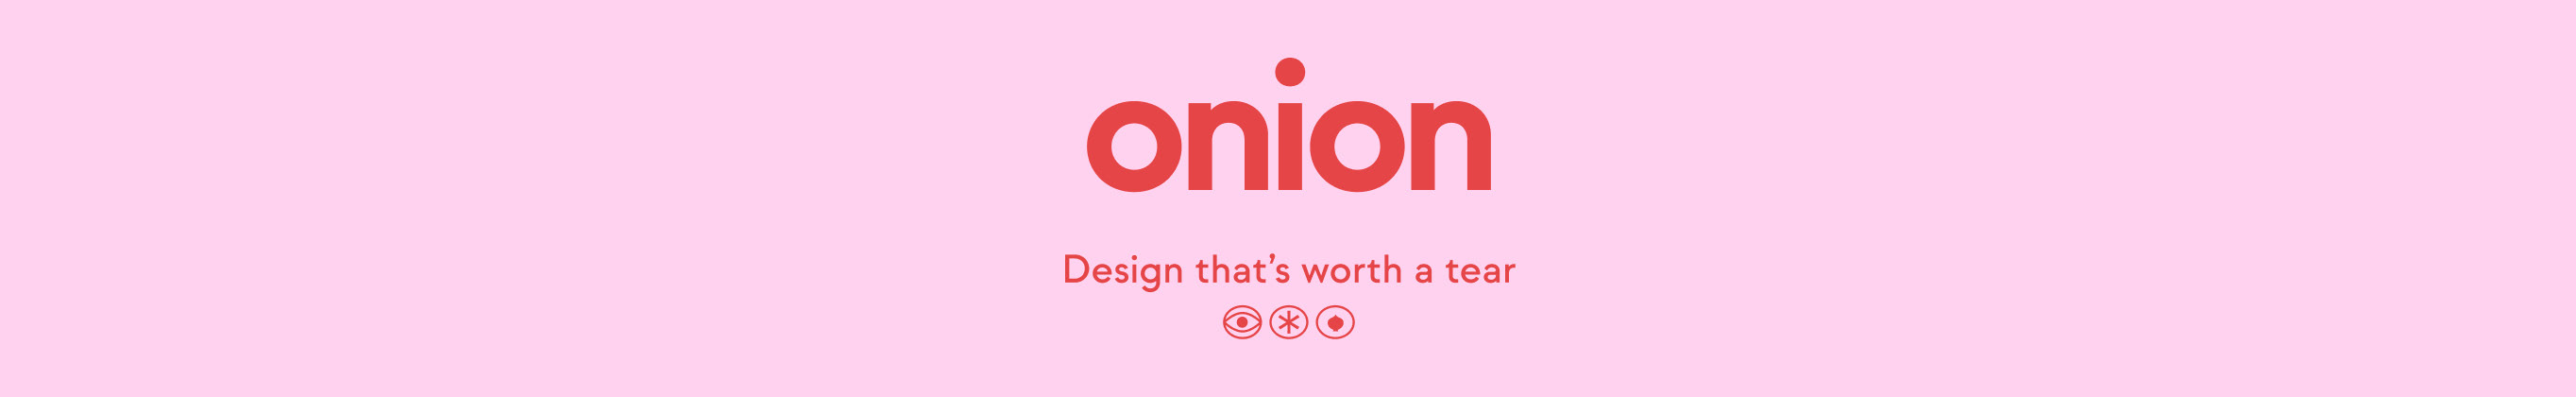 Onion Studio's profile banner